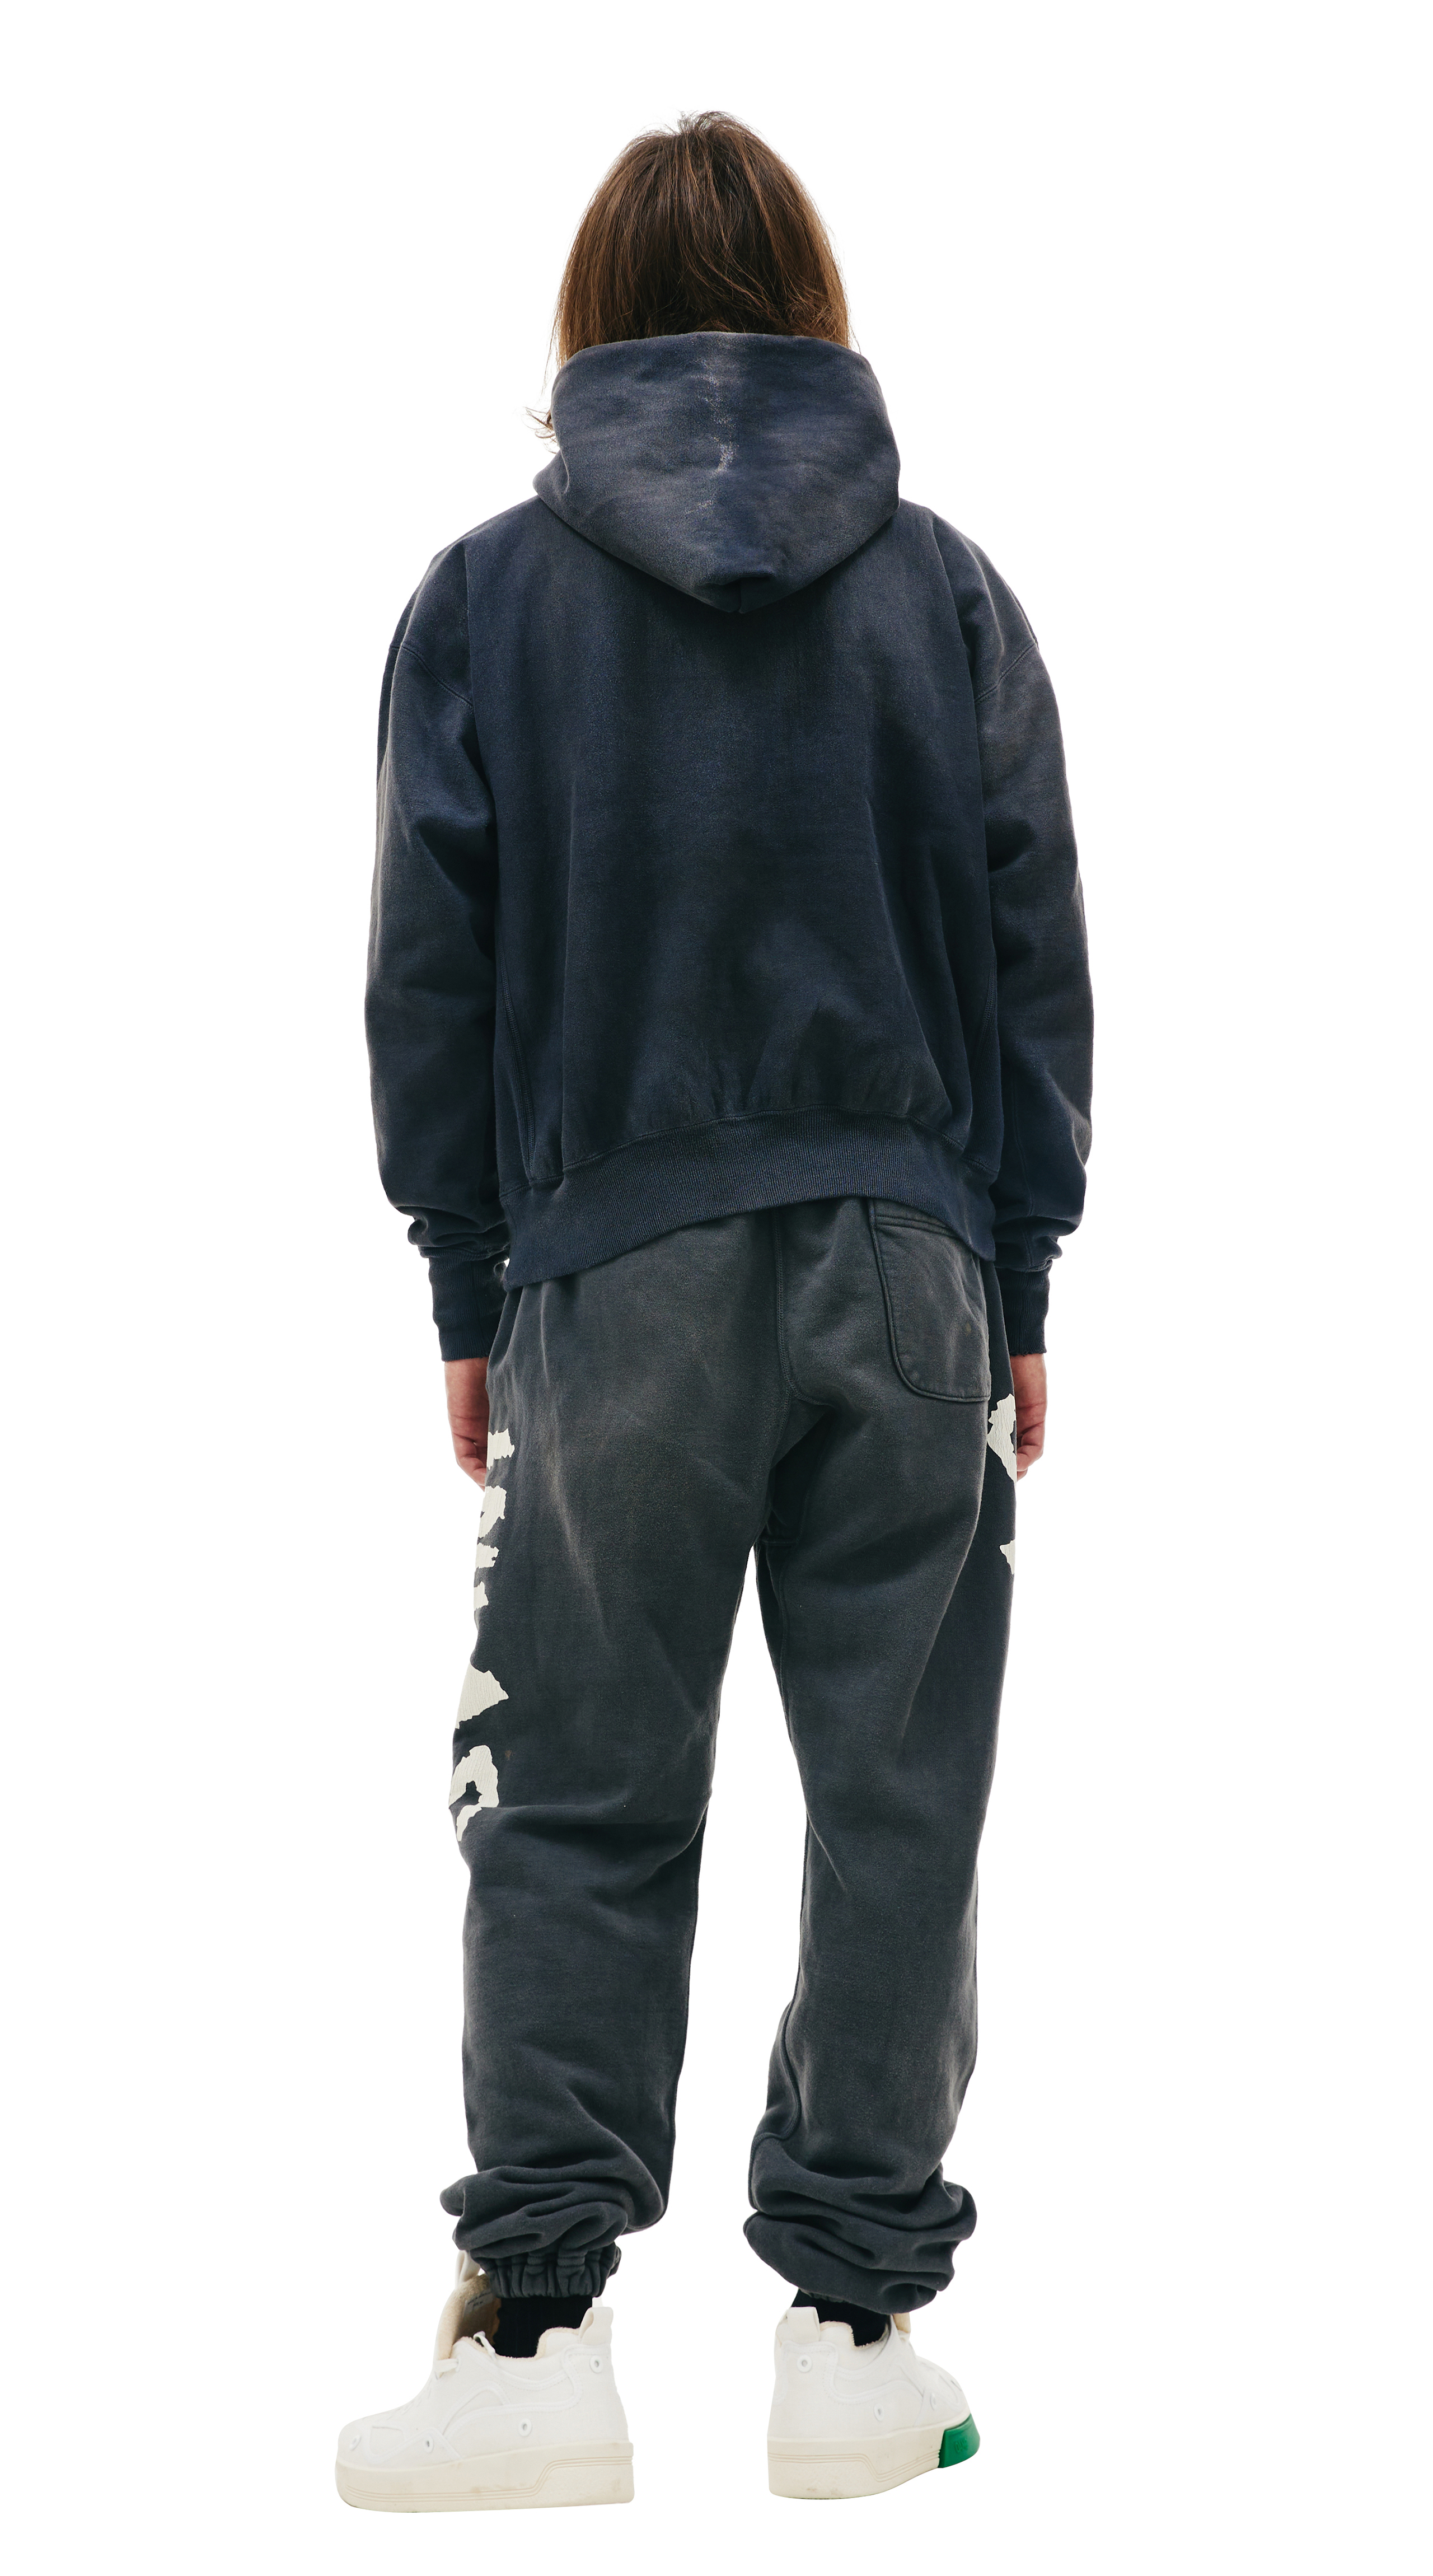 Buy Saint Michael men dark grey possession printed hoodie for $935